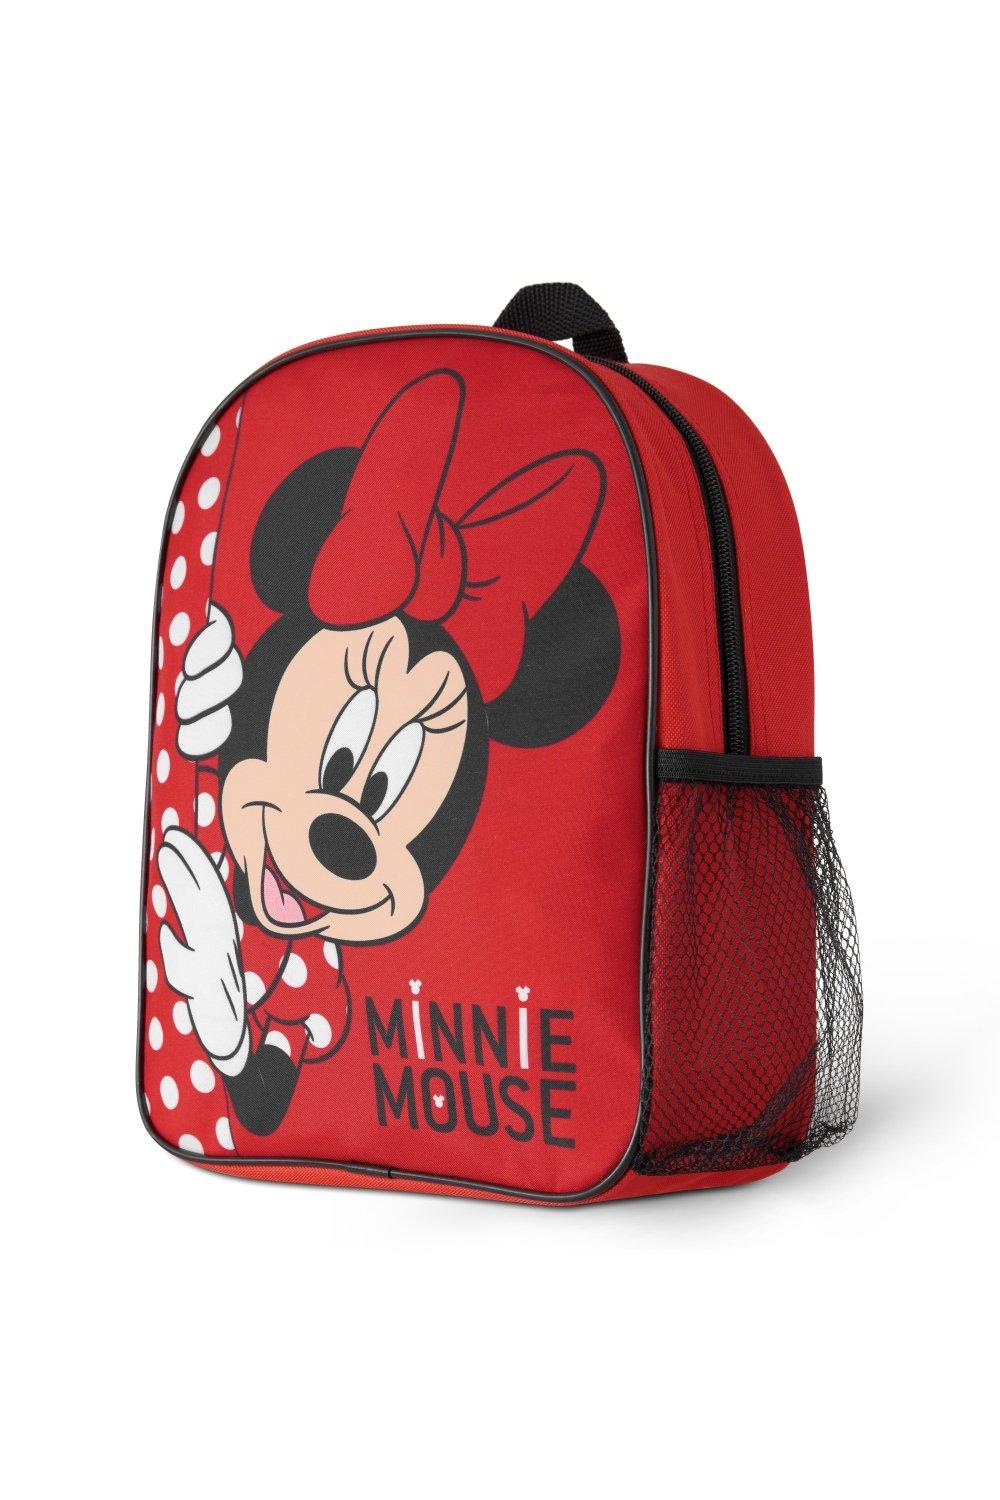 Рюкзак для девочек Минни Маус Disney, красный детский школьный ранец с мультяшным милым тигром легкий дорожный рюкзак для мальчиков и девочек в стиле аниме для детского сада